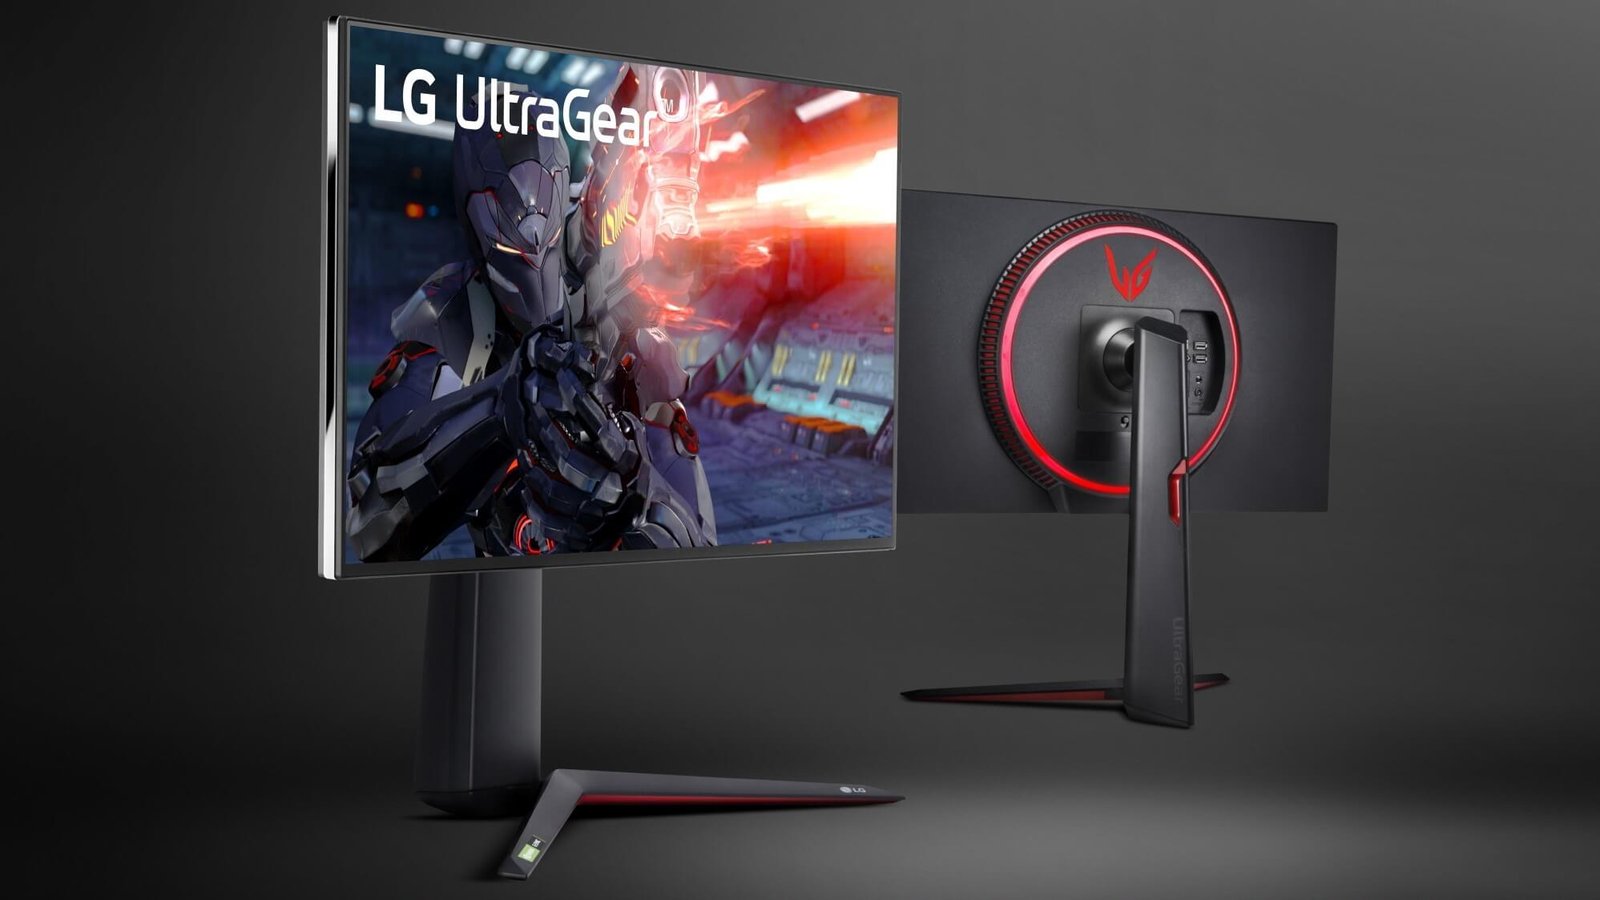 LG Ultragear 4K